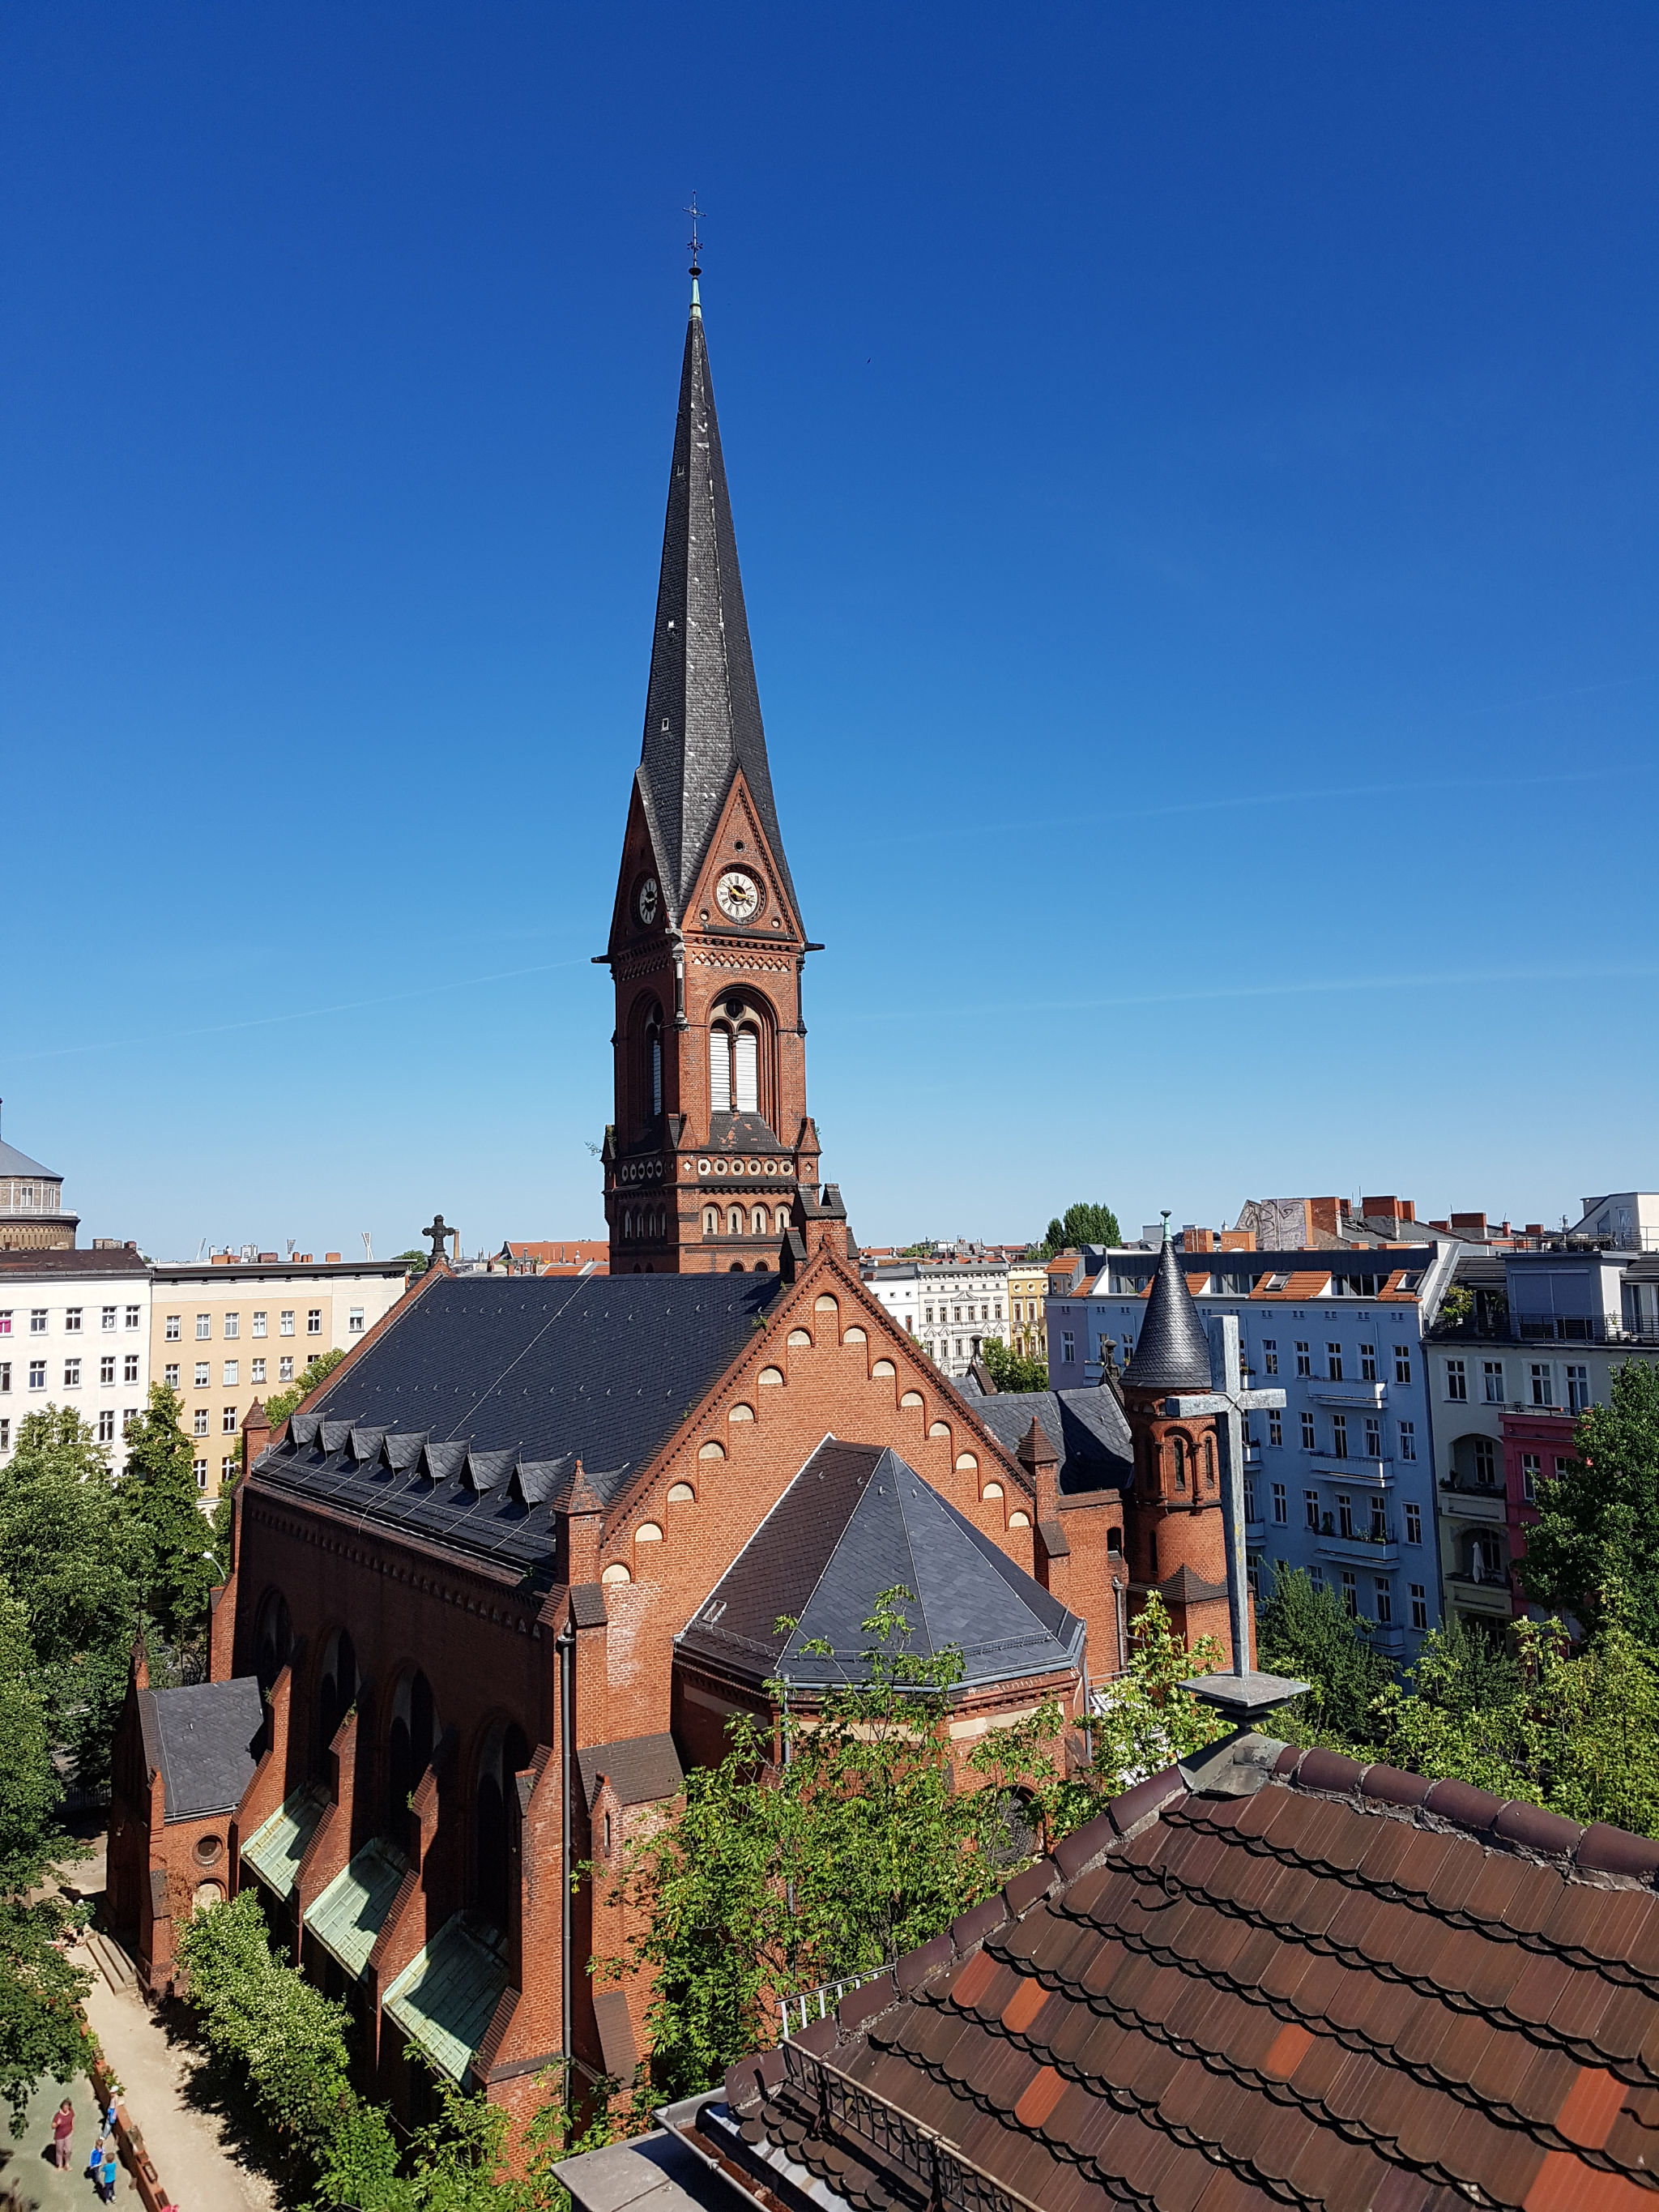 Die Immanuelkirche vom Dach des Gemeindehauses aus gesehen